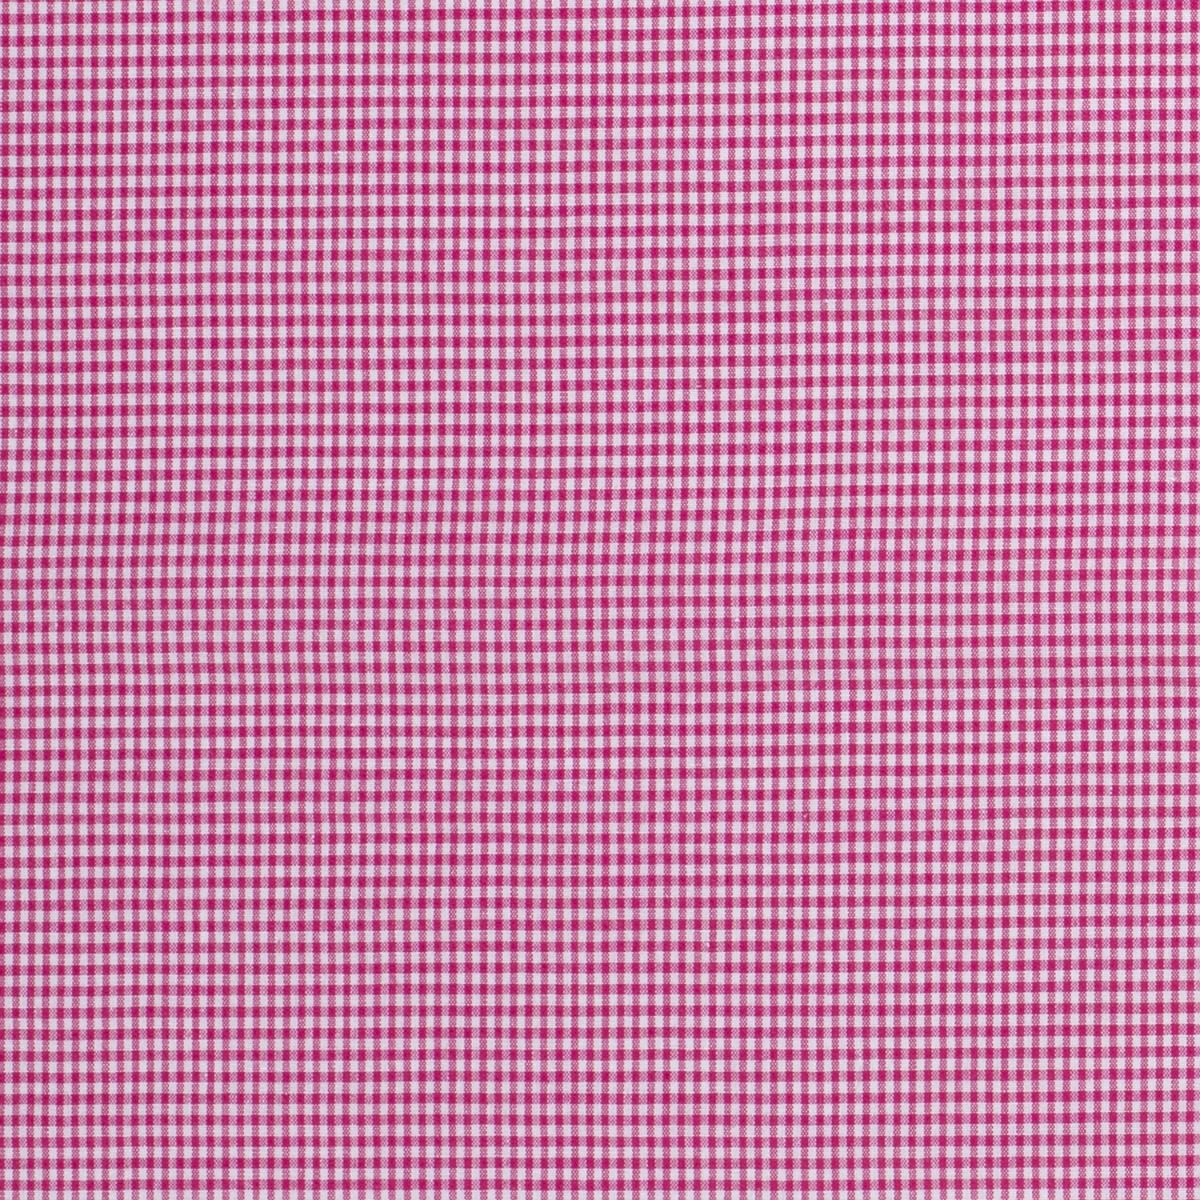 Baumwolle Karo Mini Standard Pink